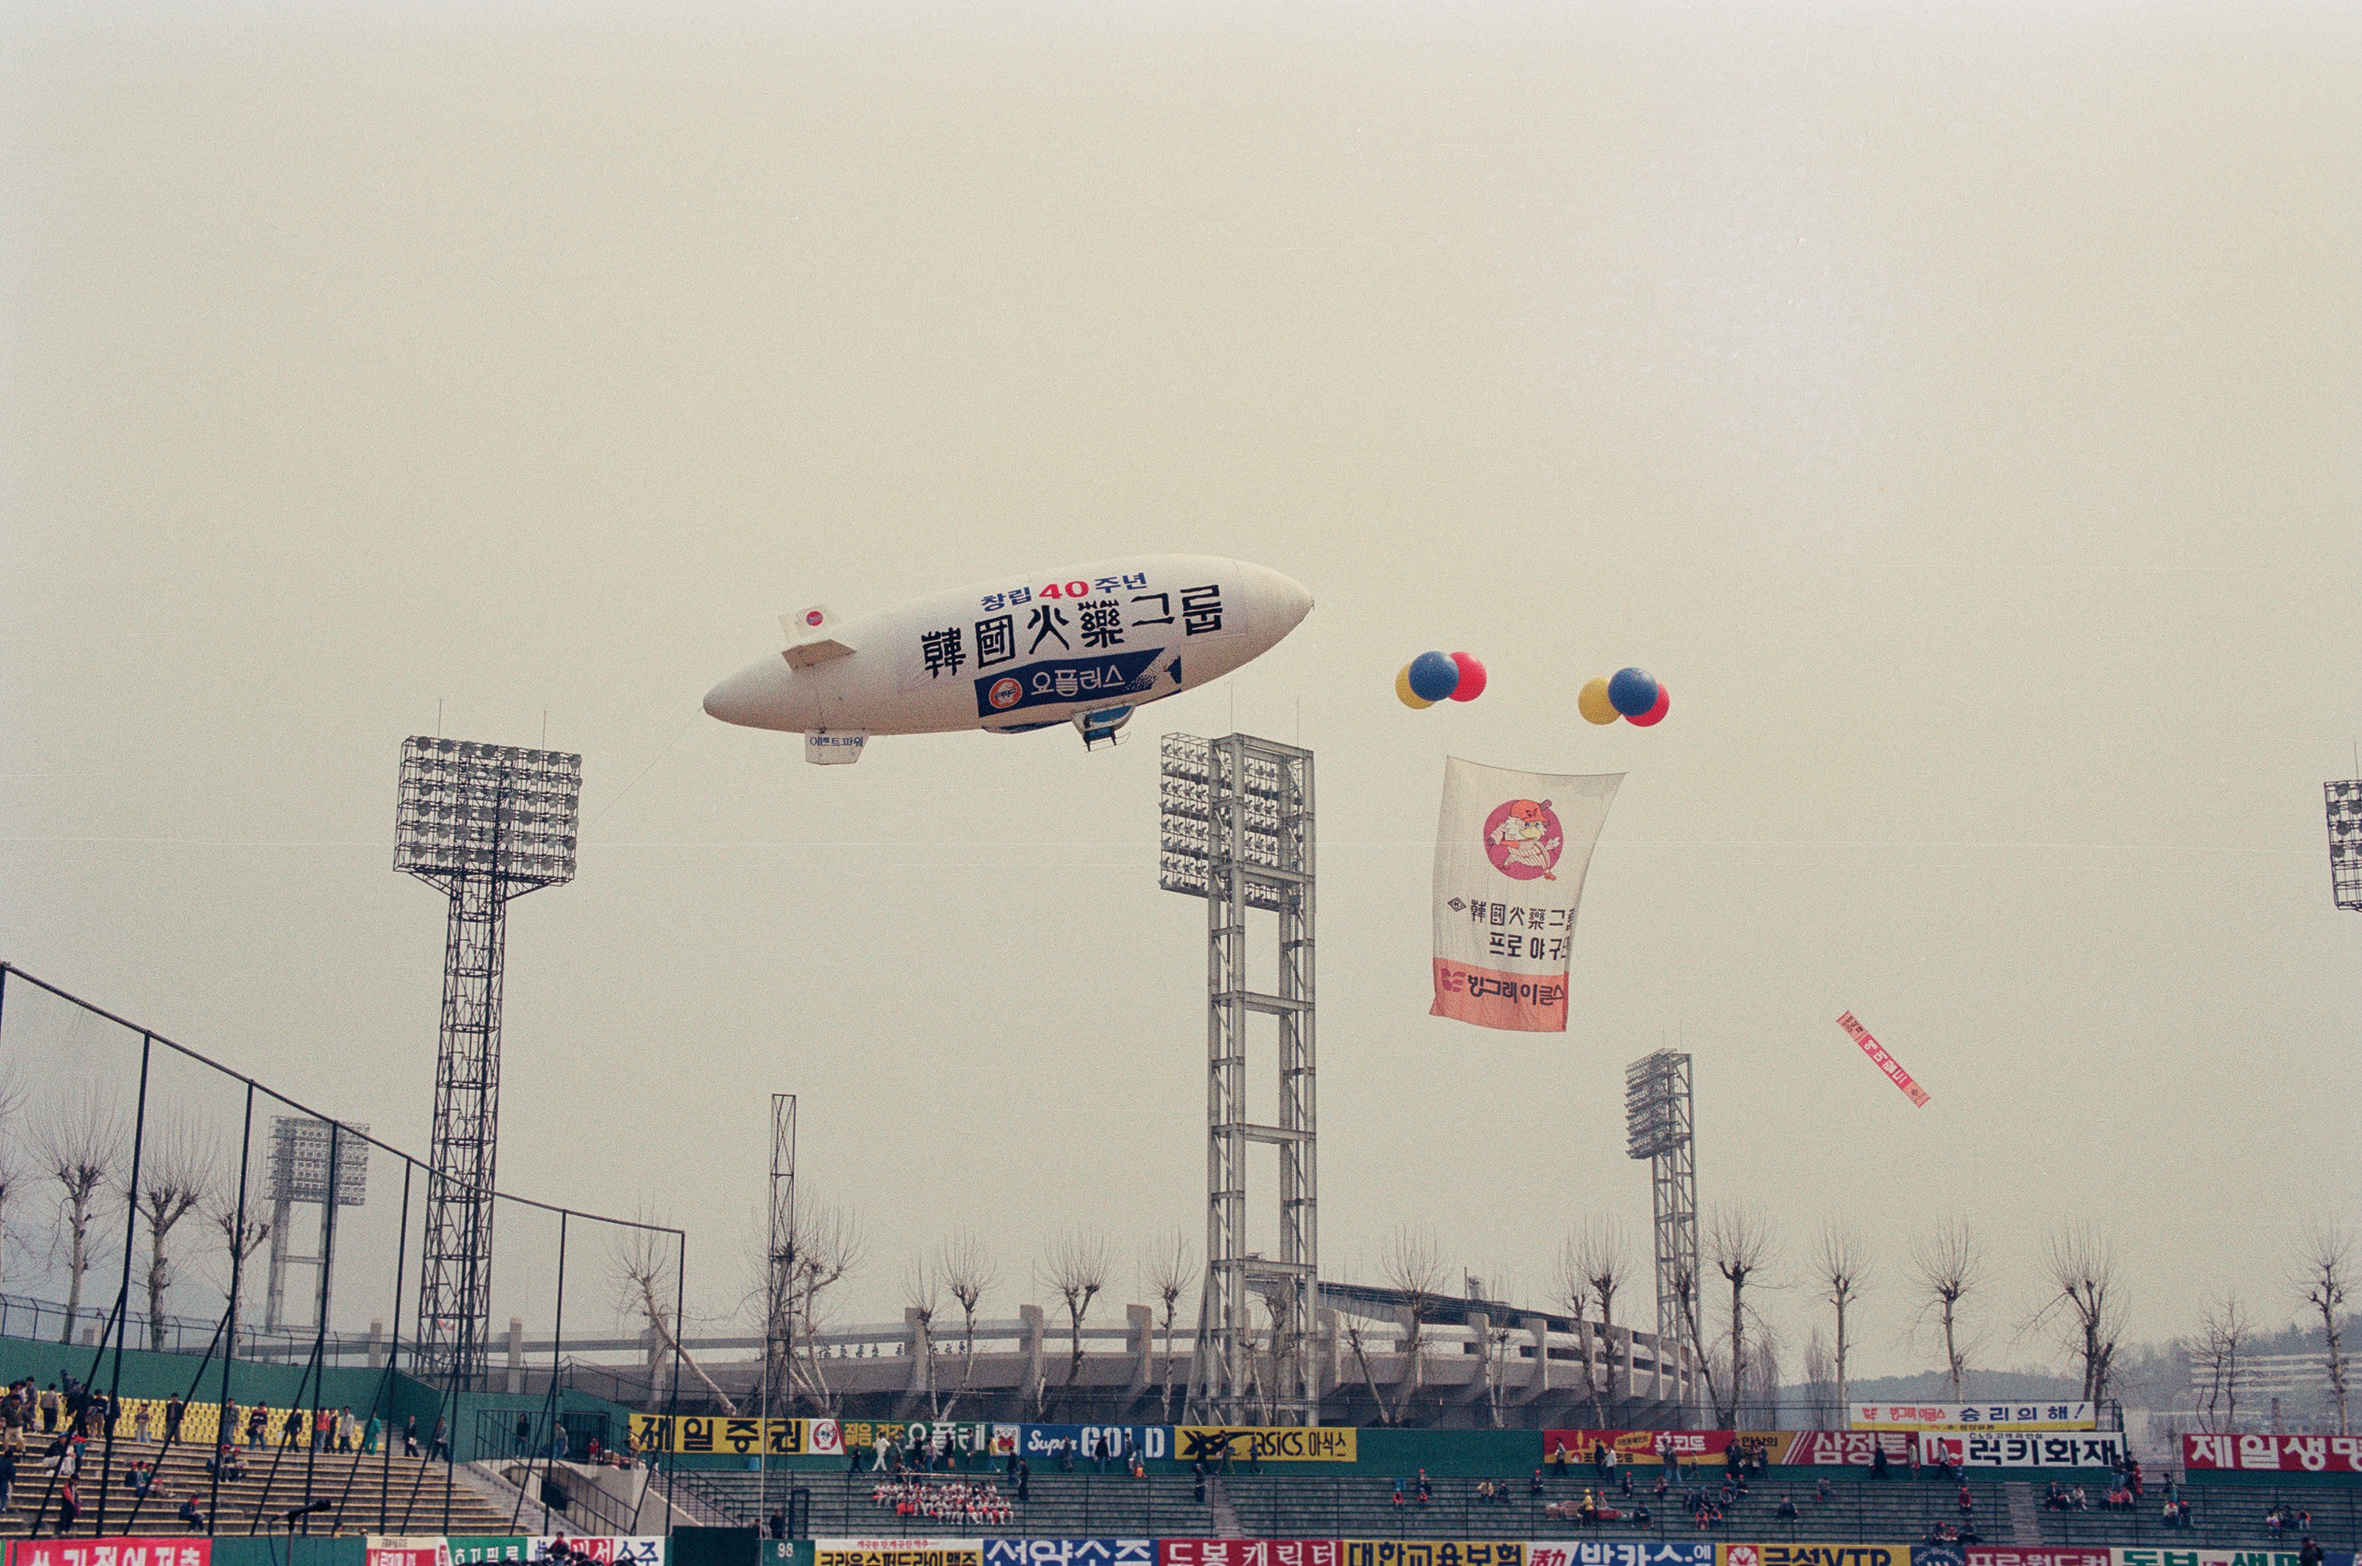 1992, 프로야구 한국시리즈 개막식에 사용된 애드벌룬 옥외광고물들